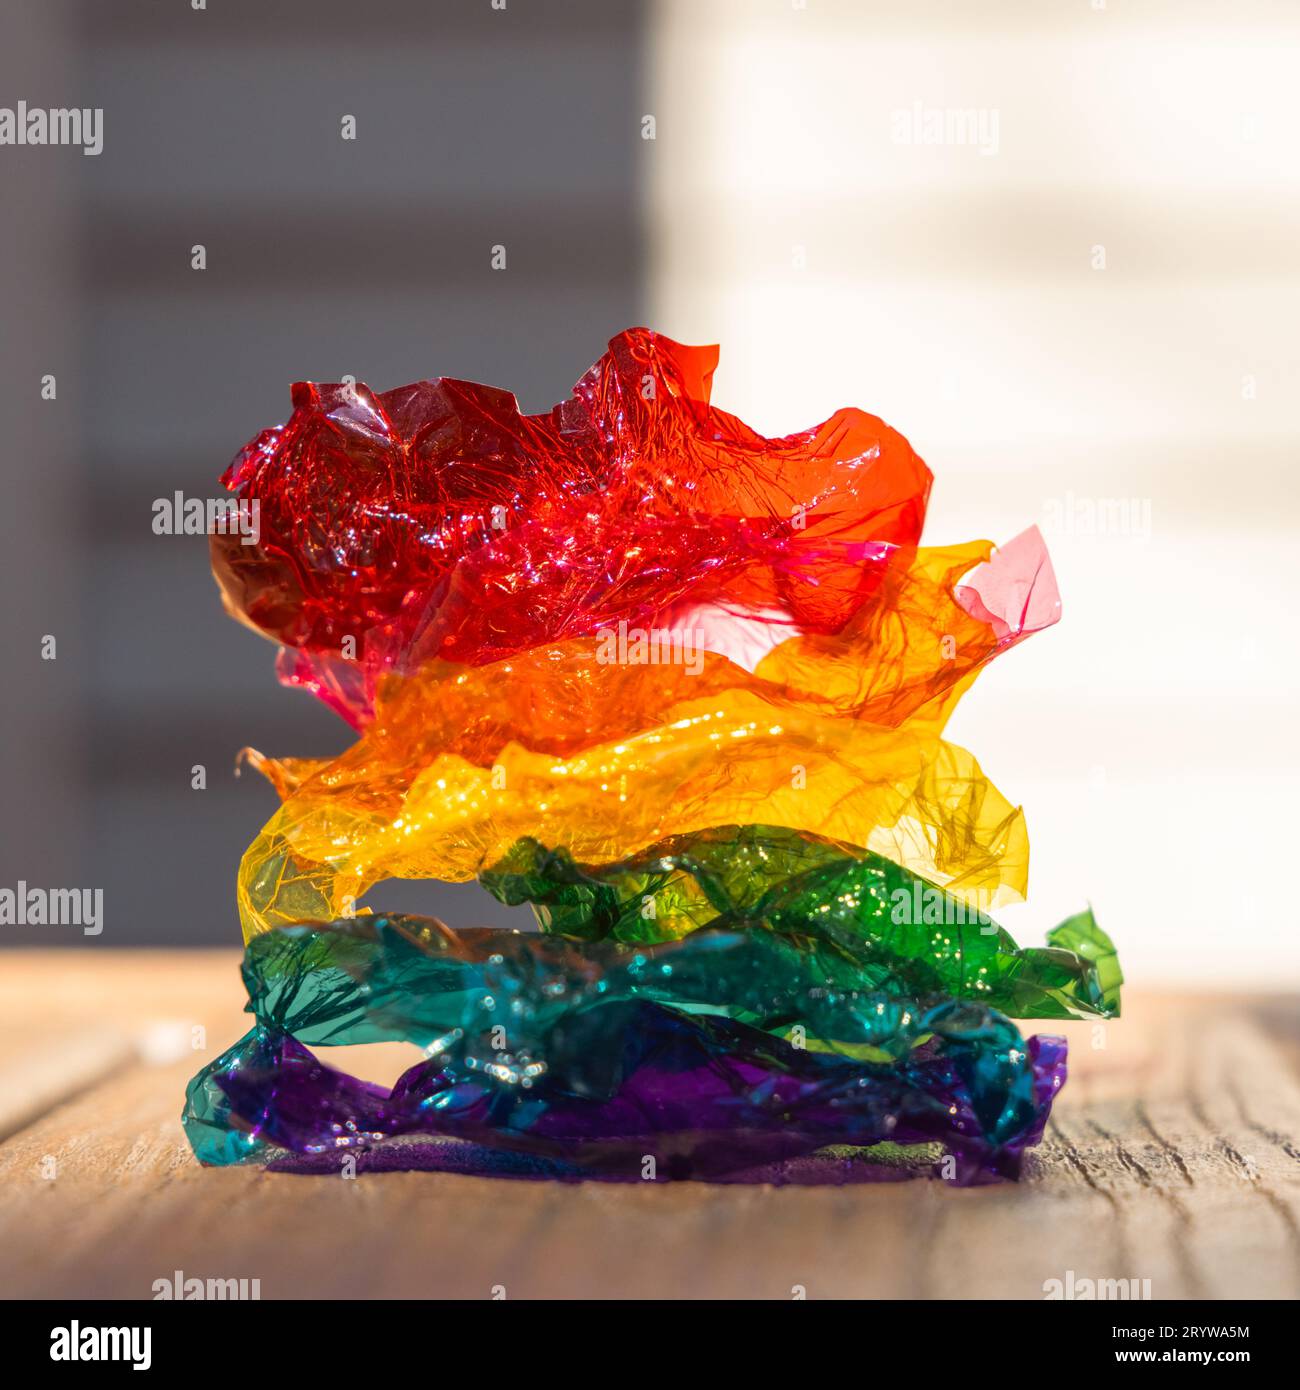 Regenbogenhaufen aus farbigen süßen Plastikverpackungen – rot, orange, gelb, grün, türkisblau, violett – auf Holzoberfläche, vor einem glatten Hintergrund. Stockfoto